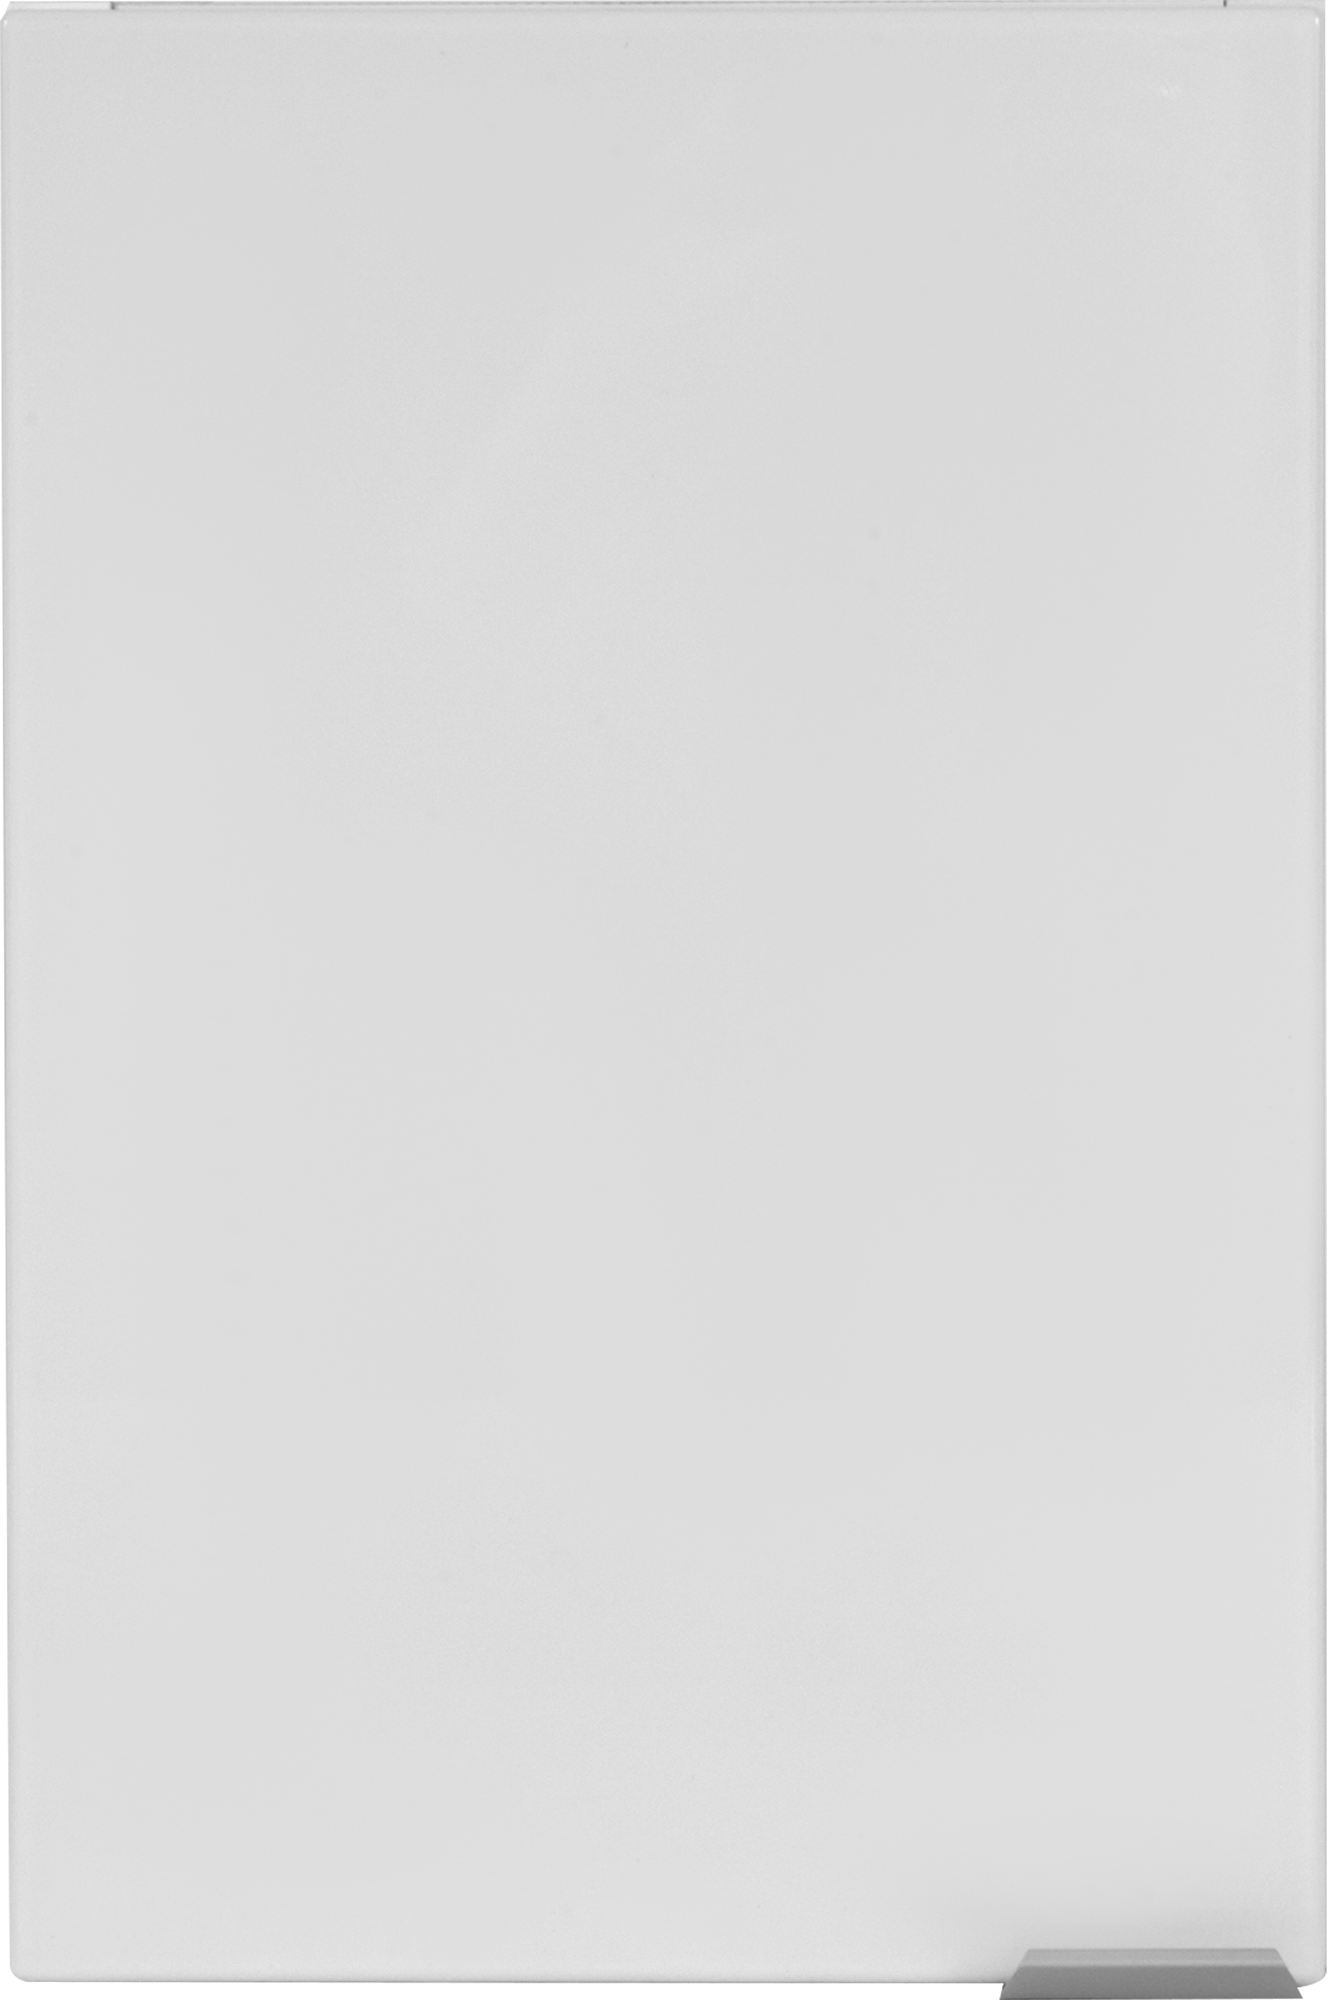 82407462 Фасад шкафа подвесного Смарт 20x30 см цвет белый матовый STLM-0026851 SENSEA